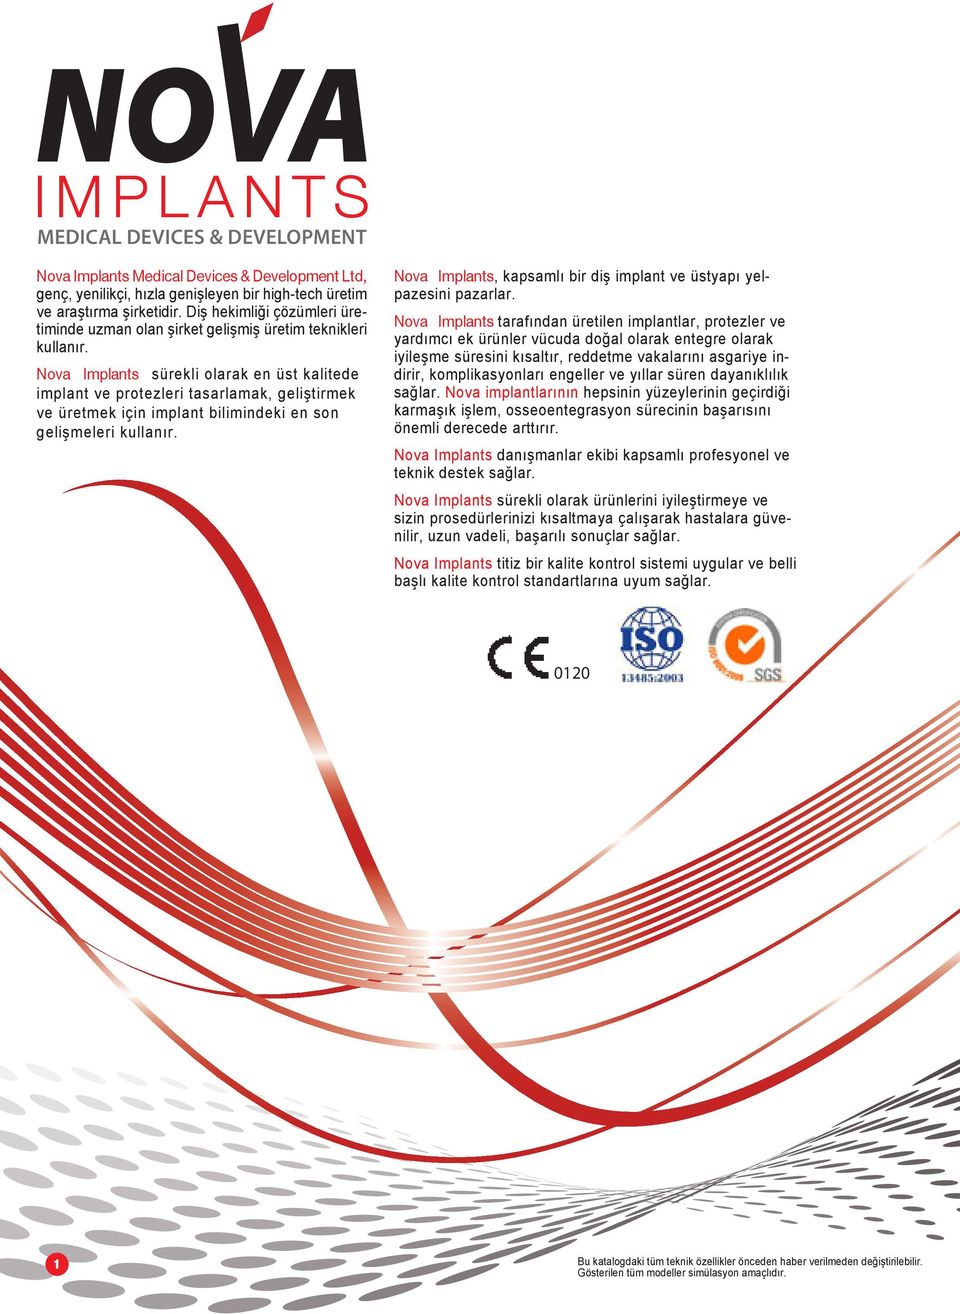 Nova Implants sürekli olarak en üst kalitede implant ve protezleri tasarlamak, geliştirmek ve üretmek için implant bilimindeki en son gelişmeleri kullanır.